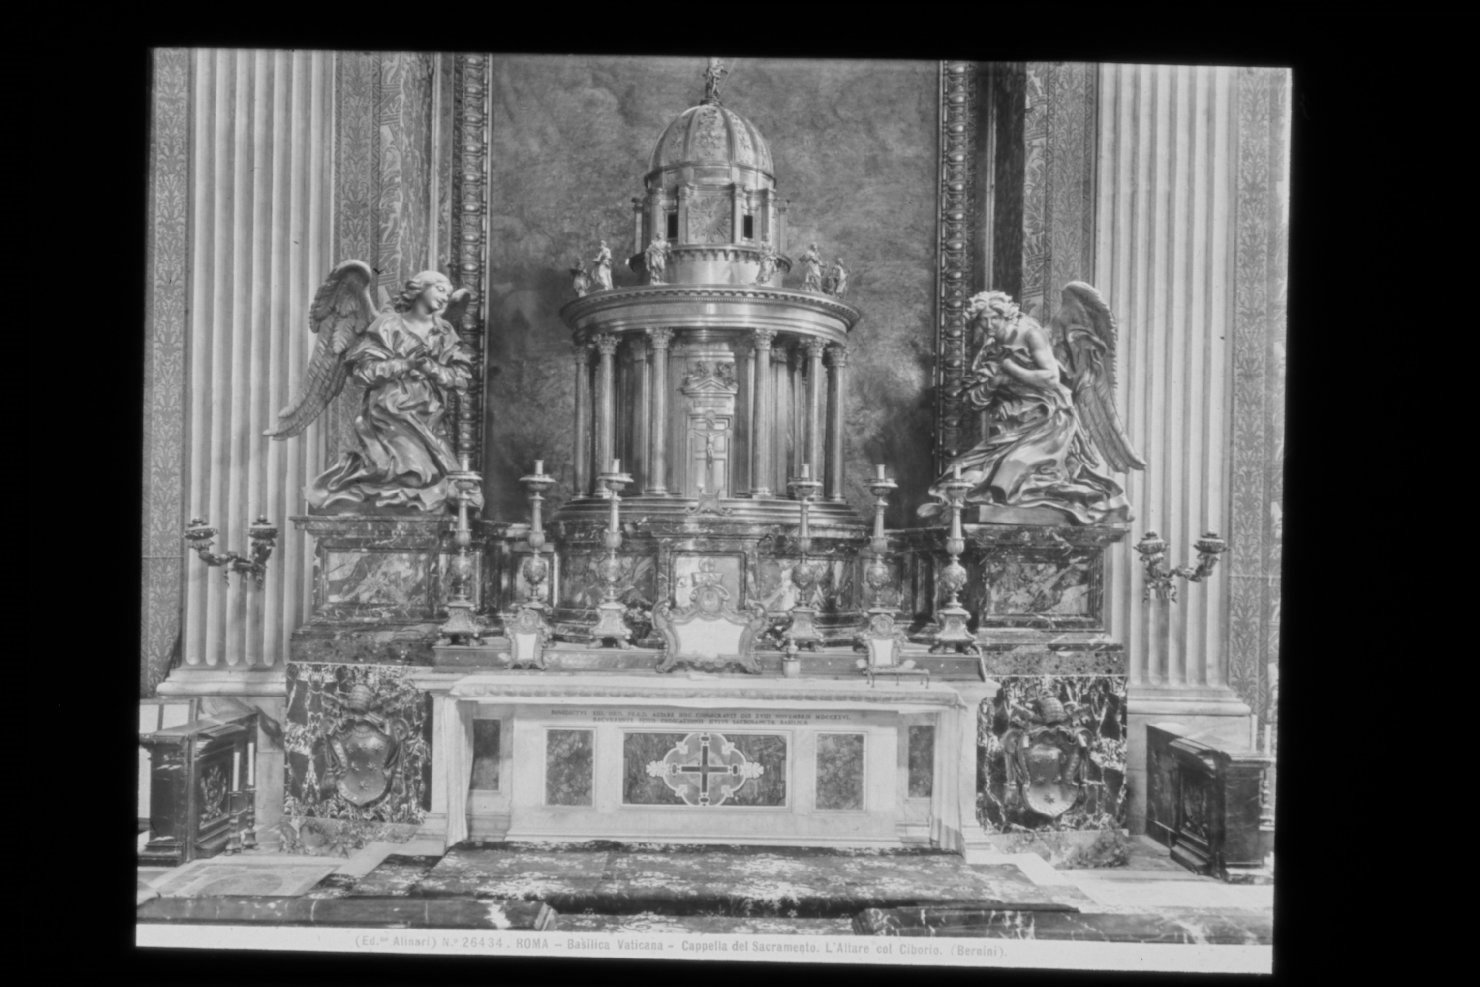 Monumenti sepolcrali - Sculture (diapositiva) di Bernini, Gian Lorenzo, F.lli Alinari S.p.A. - Istituto di Edizioni Artistiche (ditta) (XX)